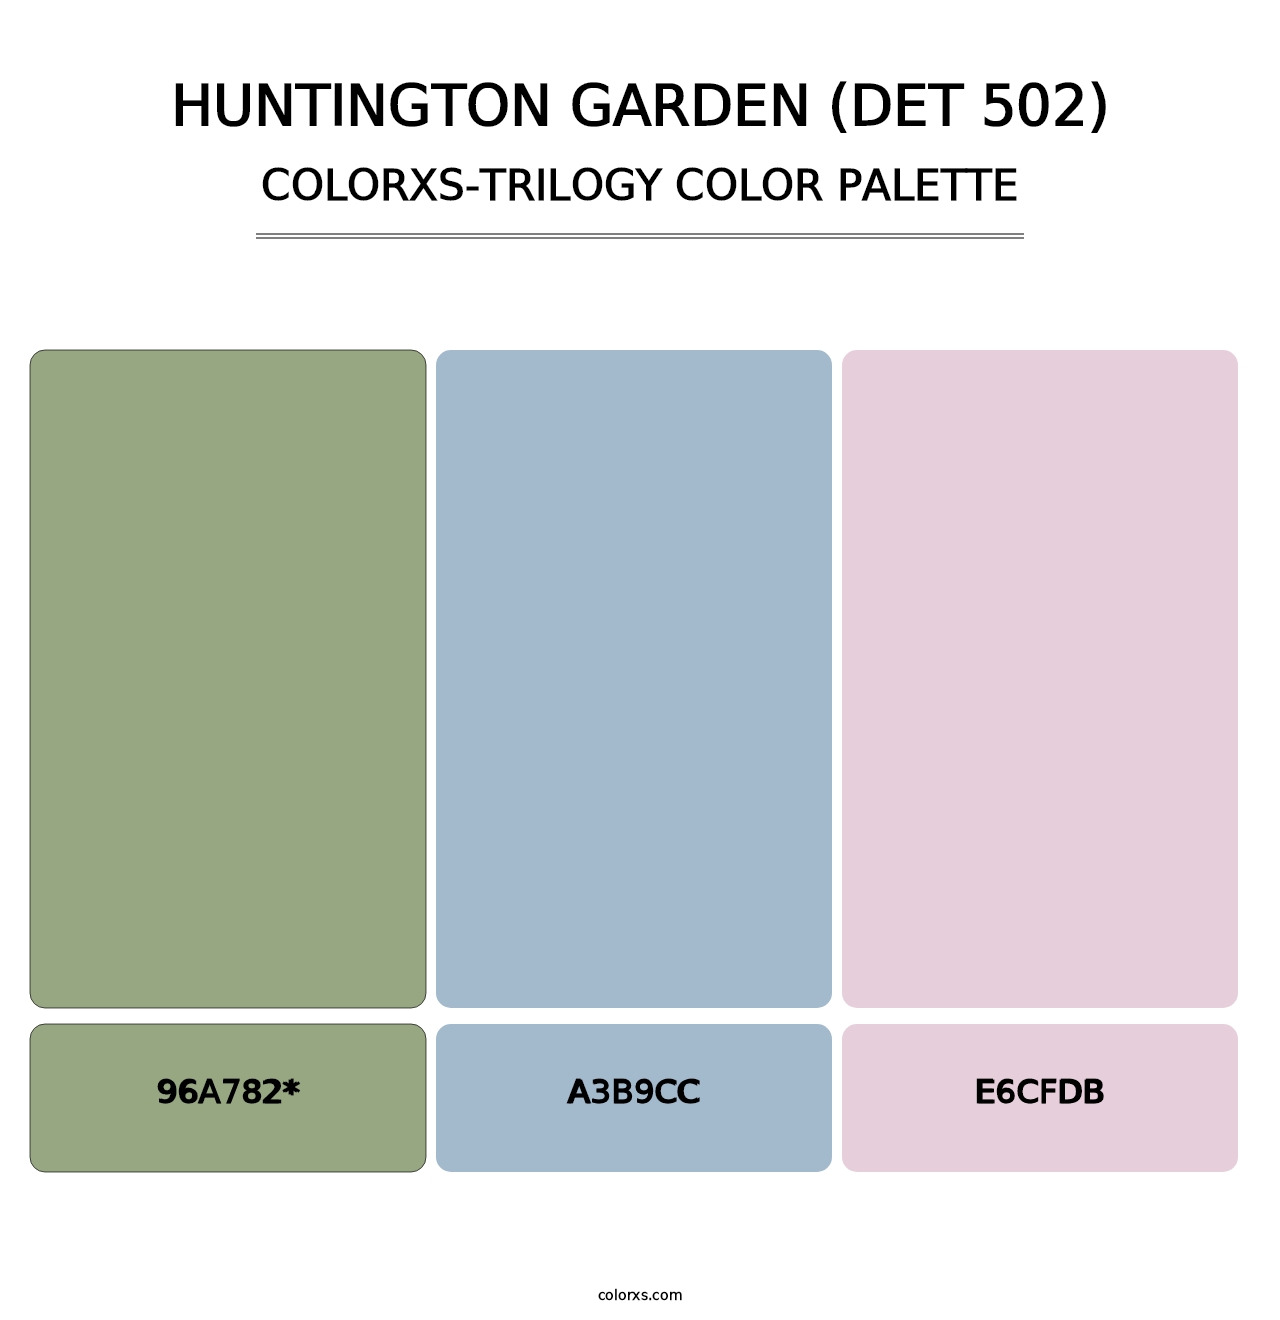 Huntington Garden (DET 502) - Colorxs Trilogy Palette